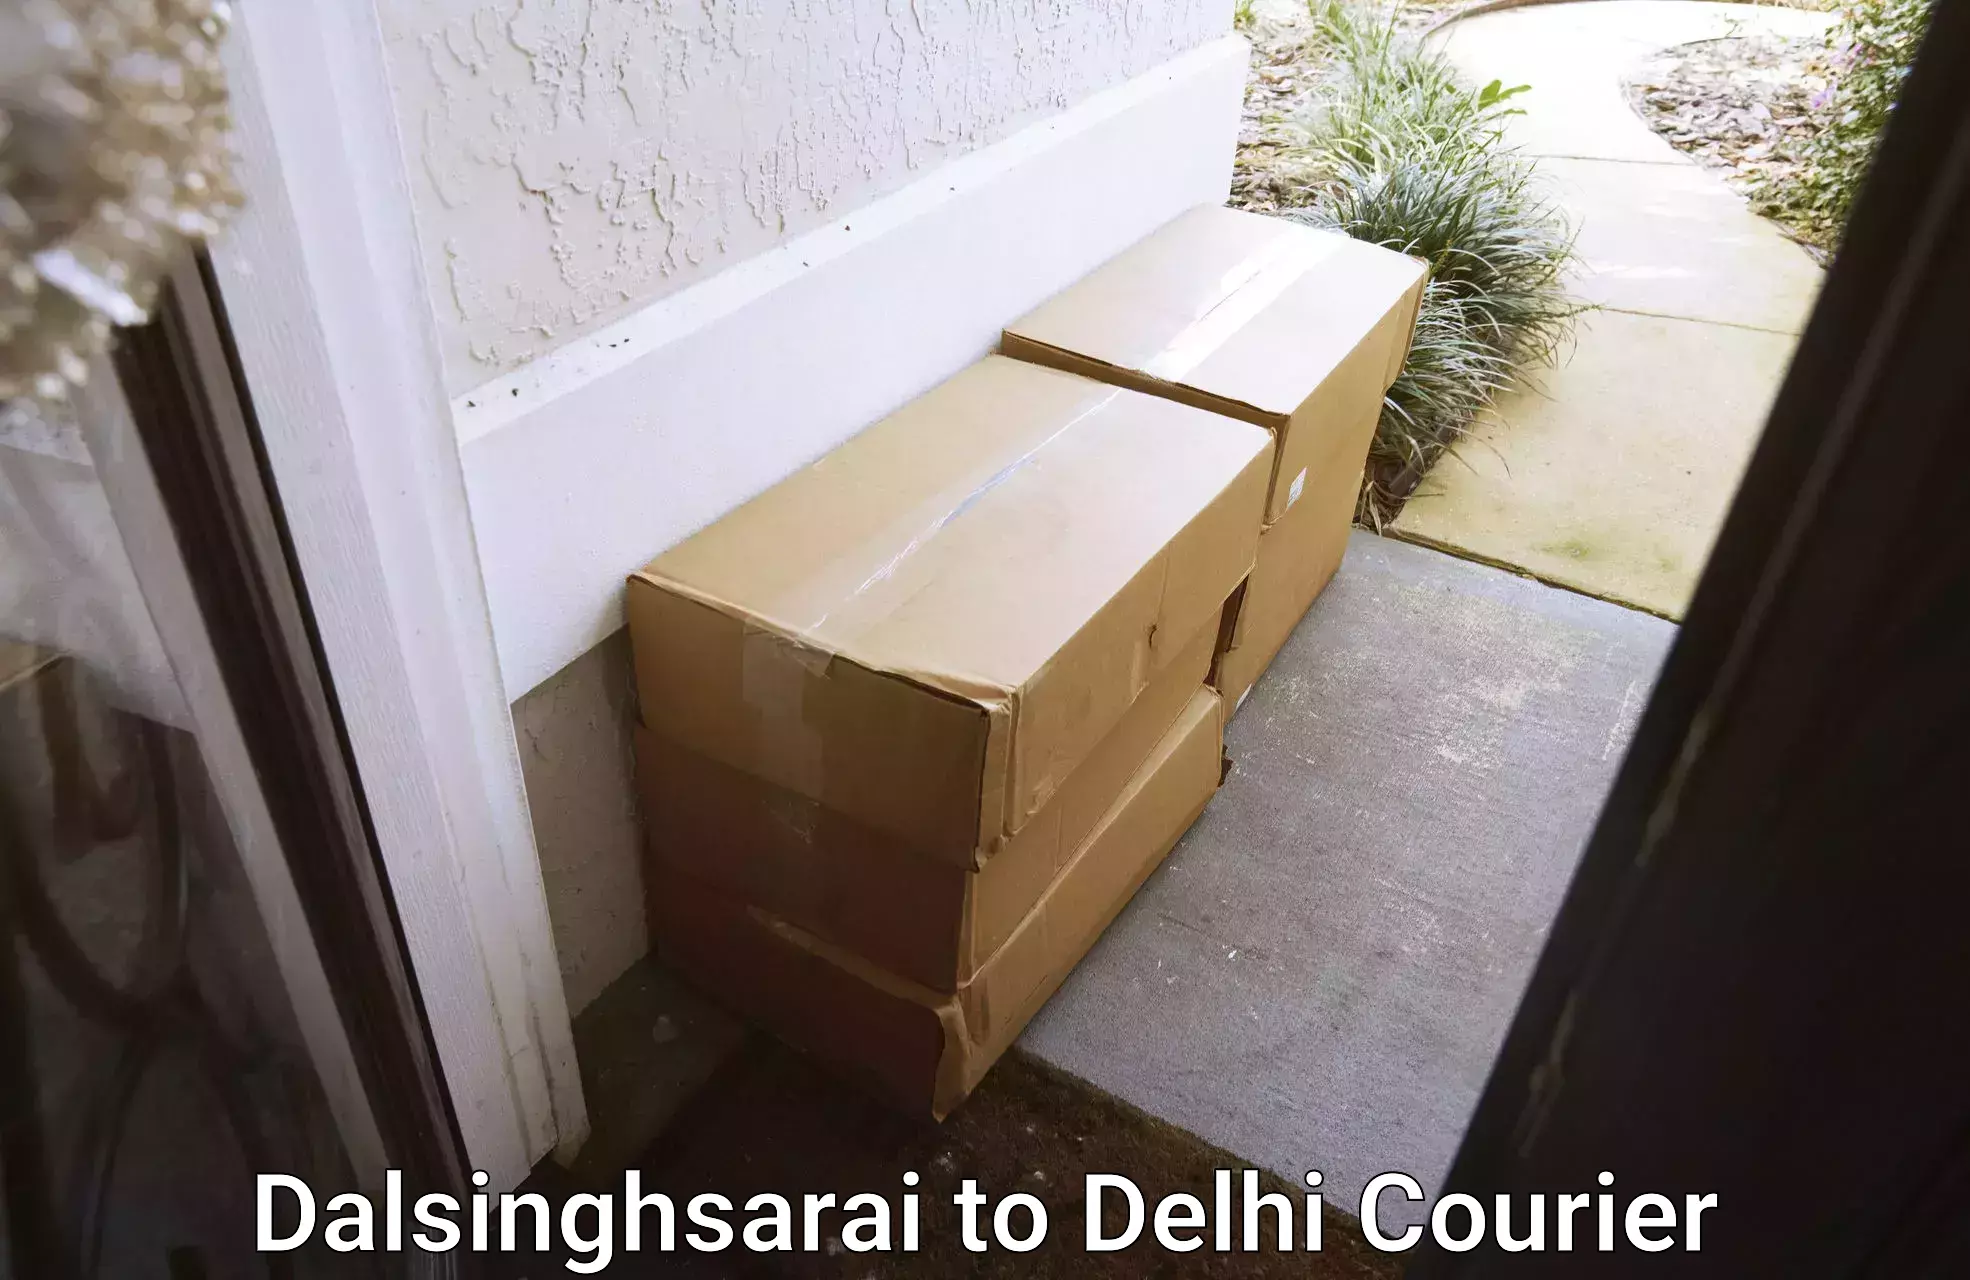 Trusted relocation services Dalsinghsarai to Jamia Millia Islamia New Delhi